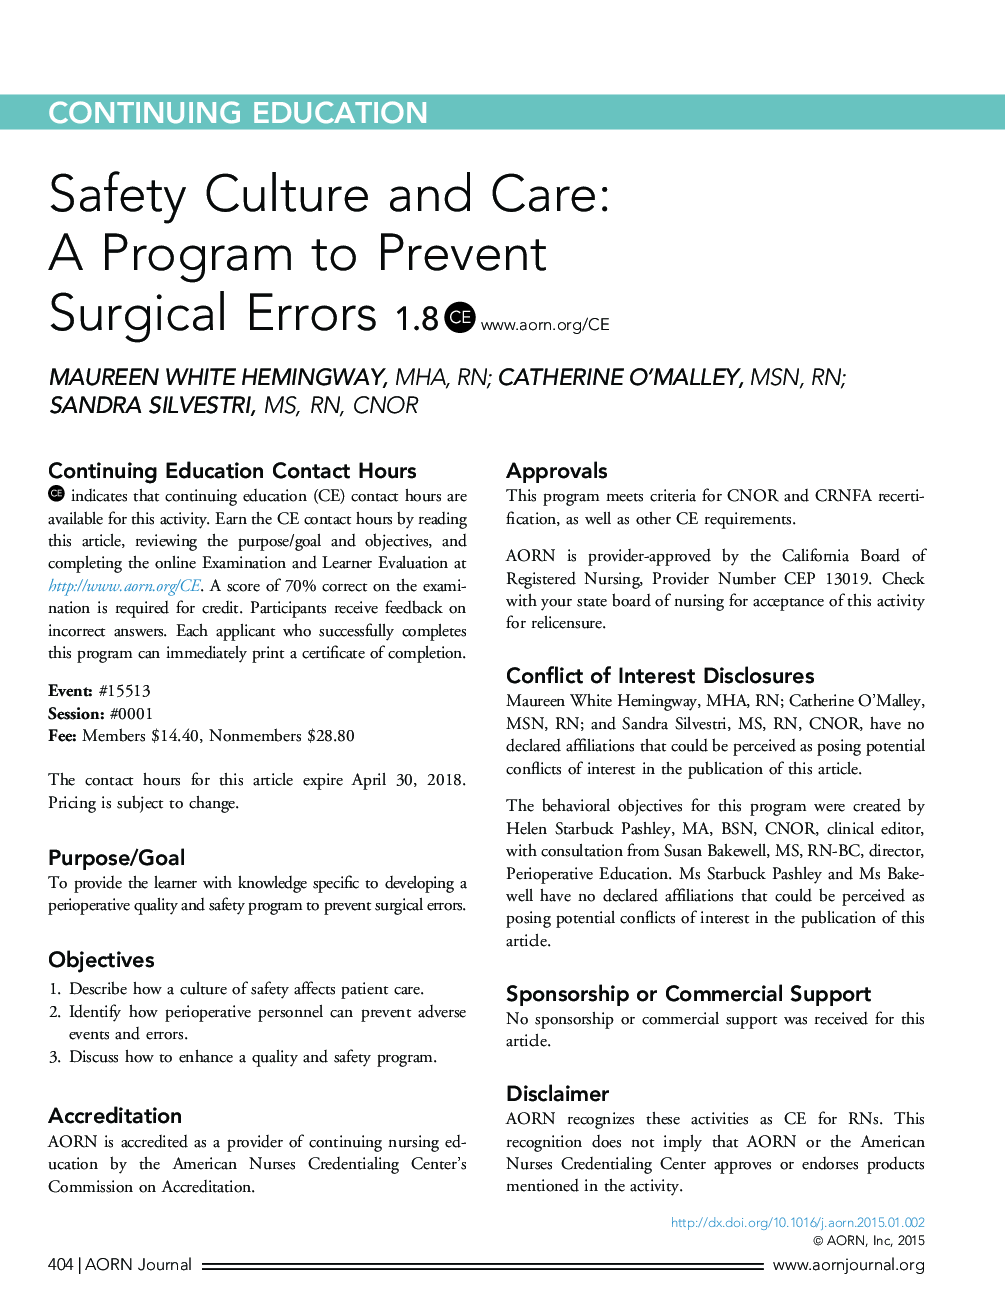 فرهنگ ایمنی و مراقبت: یک برنامه برای جلوگیری از خطاهای جراحی 